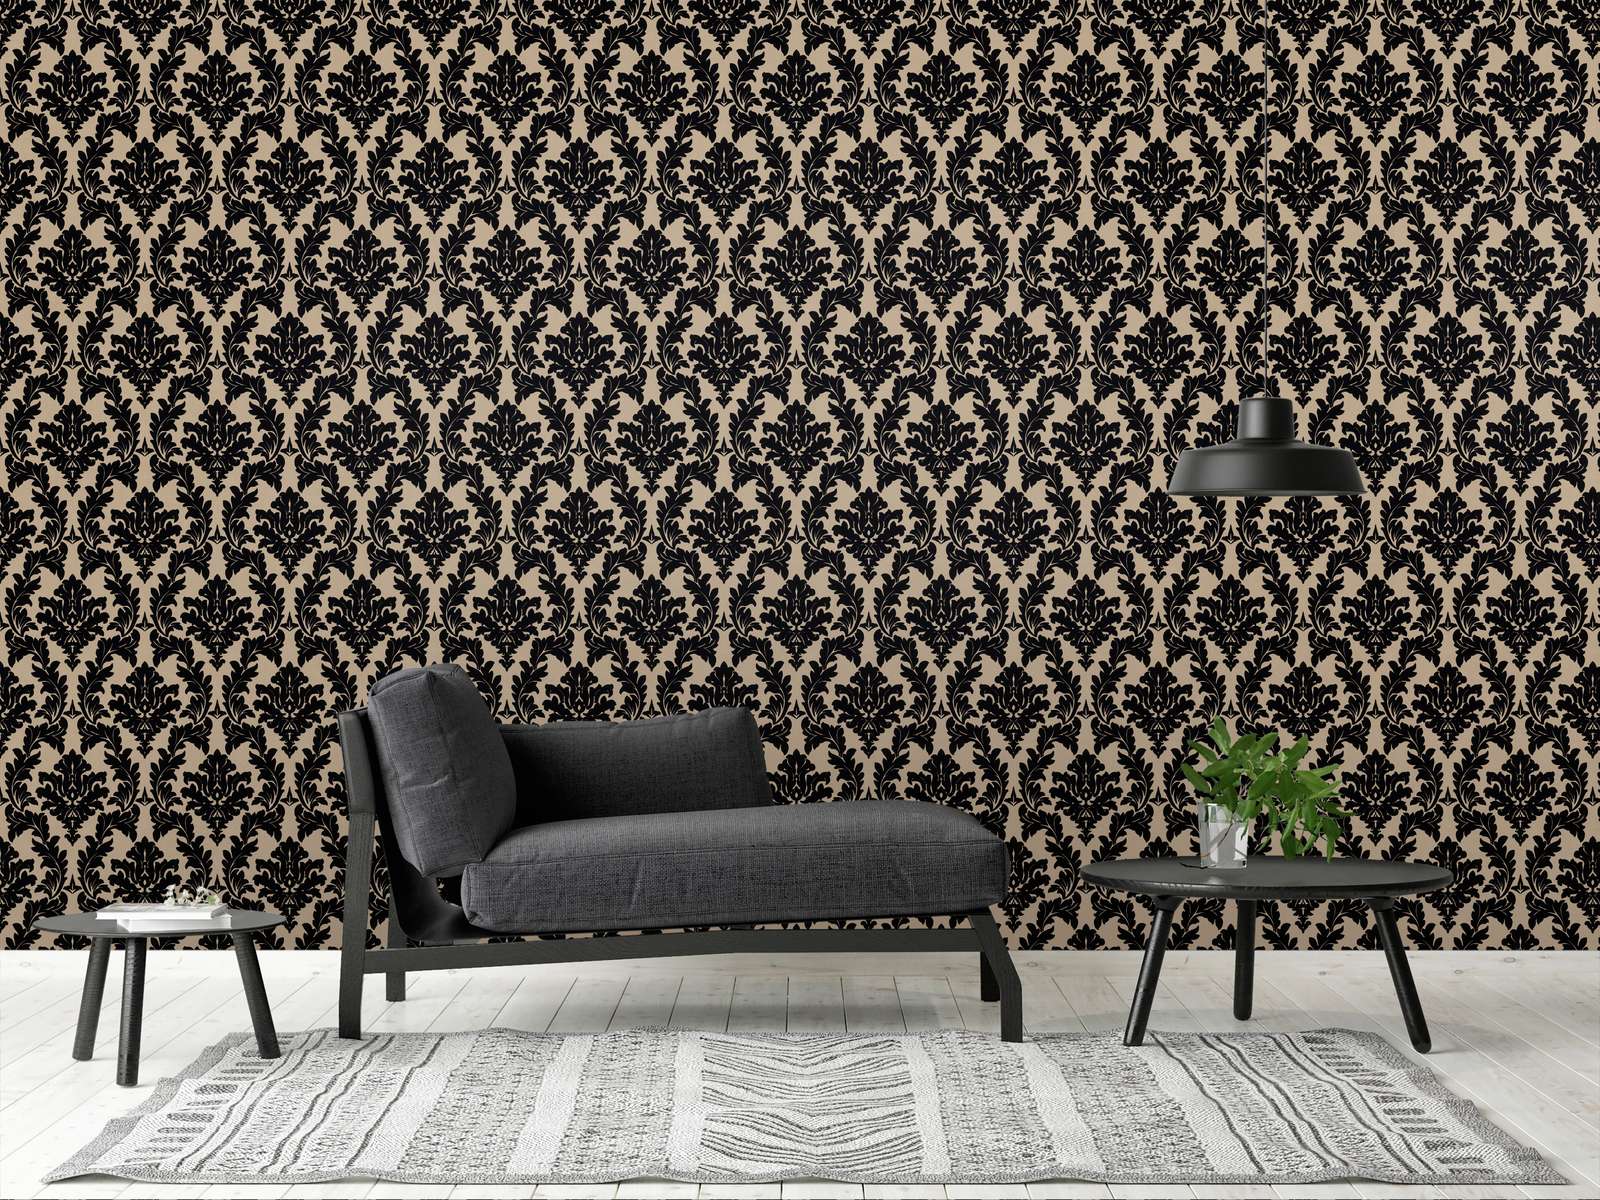             Barok behang met matglanseffect & textielgevoel - metallic, zwart
        